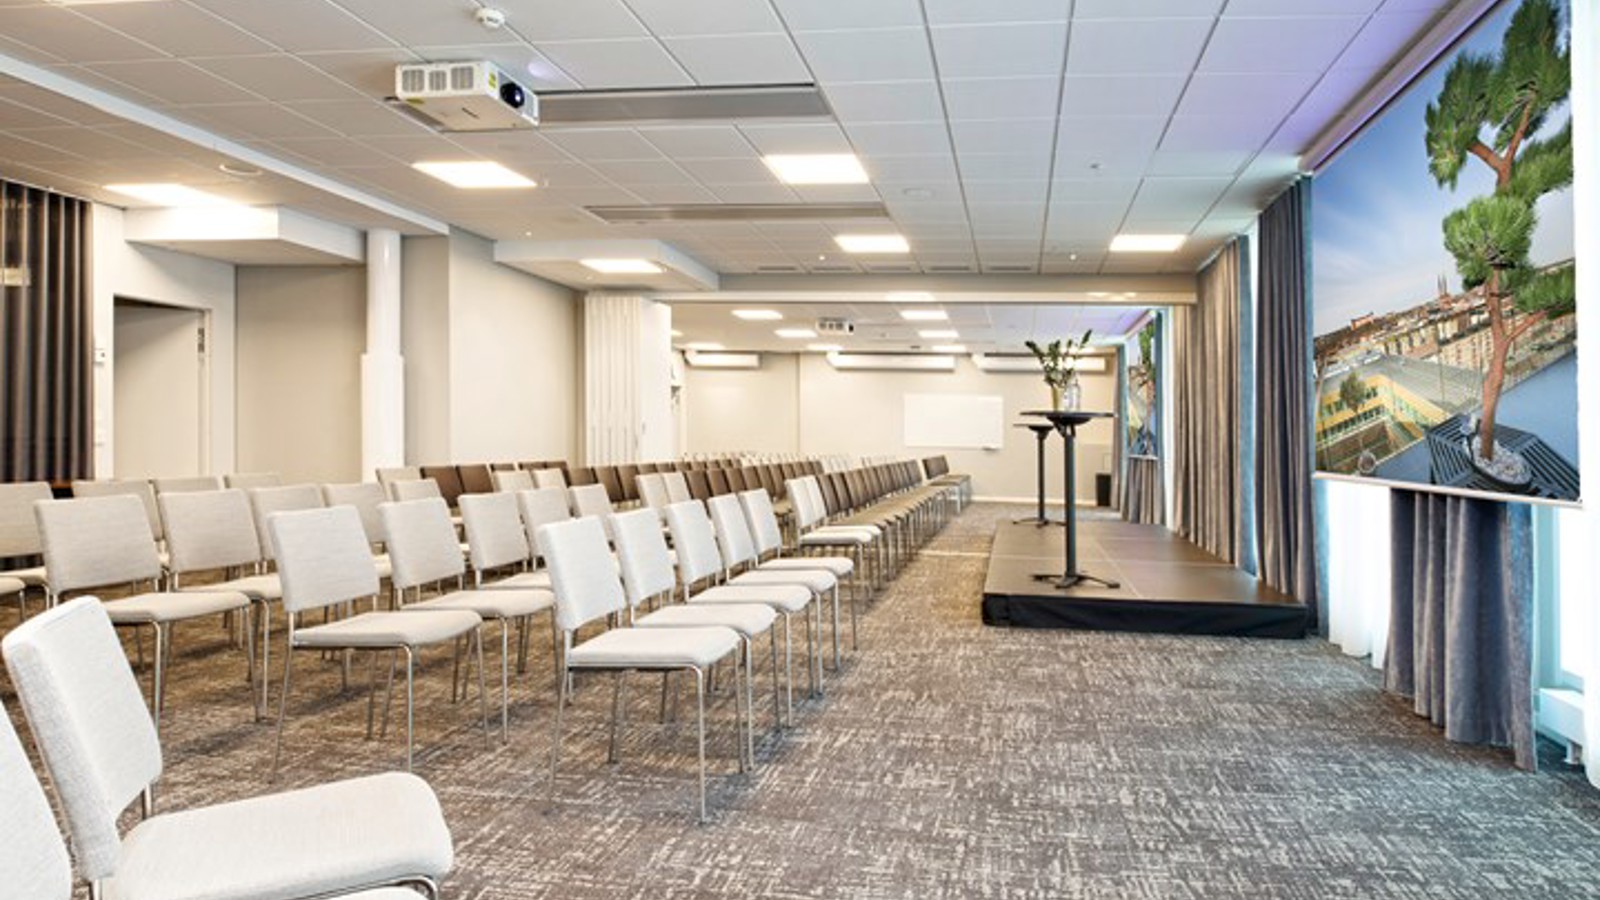 Konferensrum med biosittning, grått golv, vita stolar och vita väggar